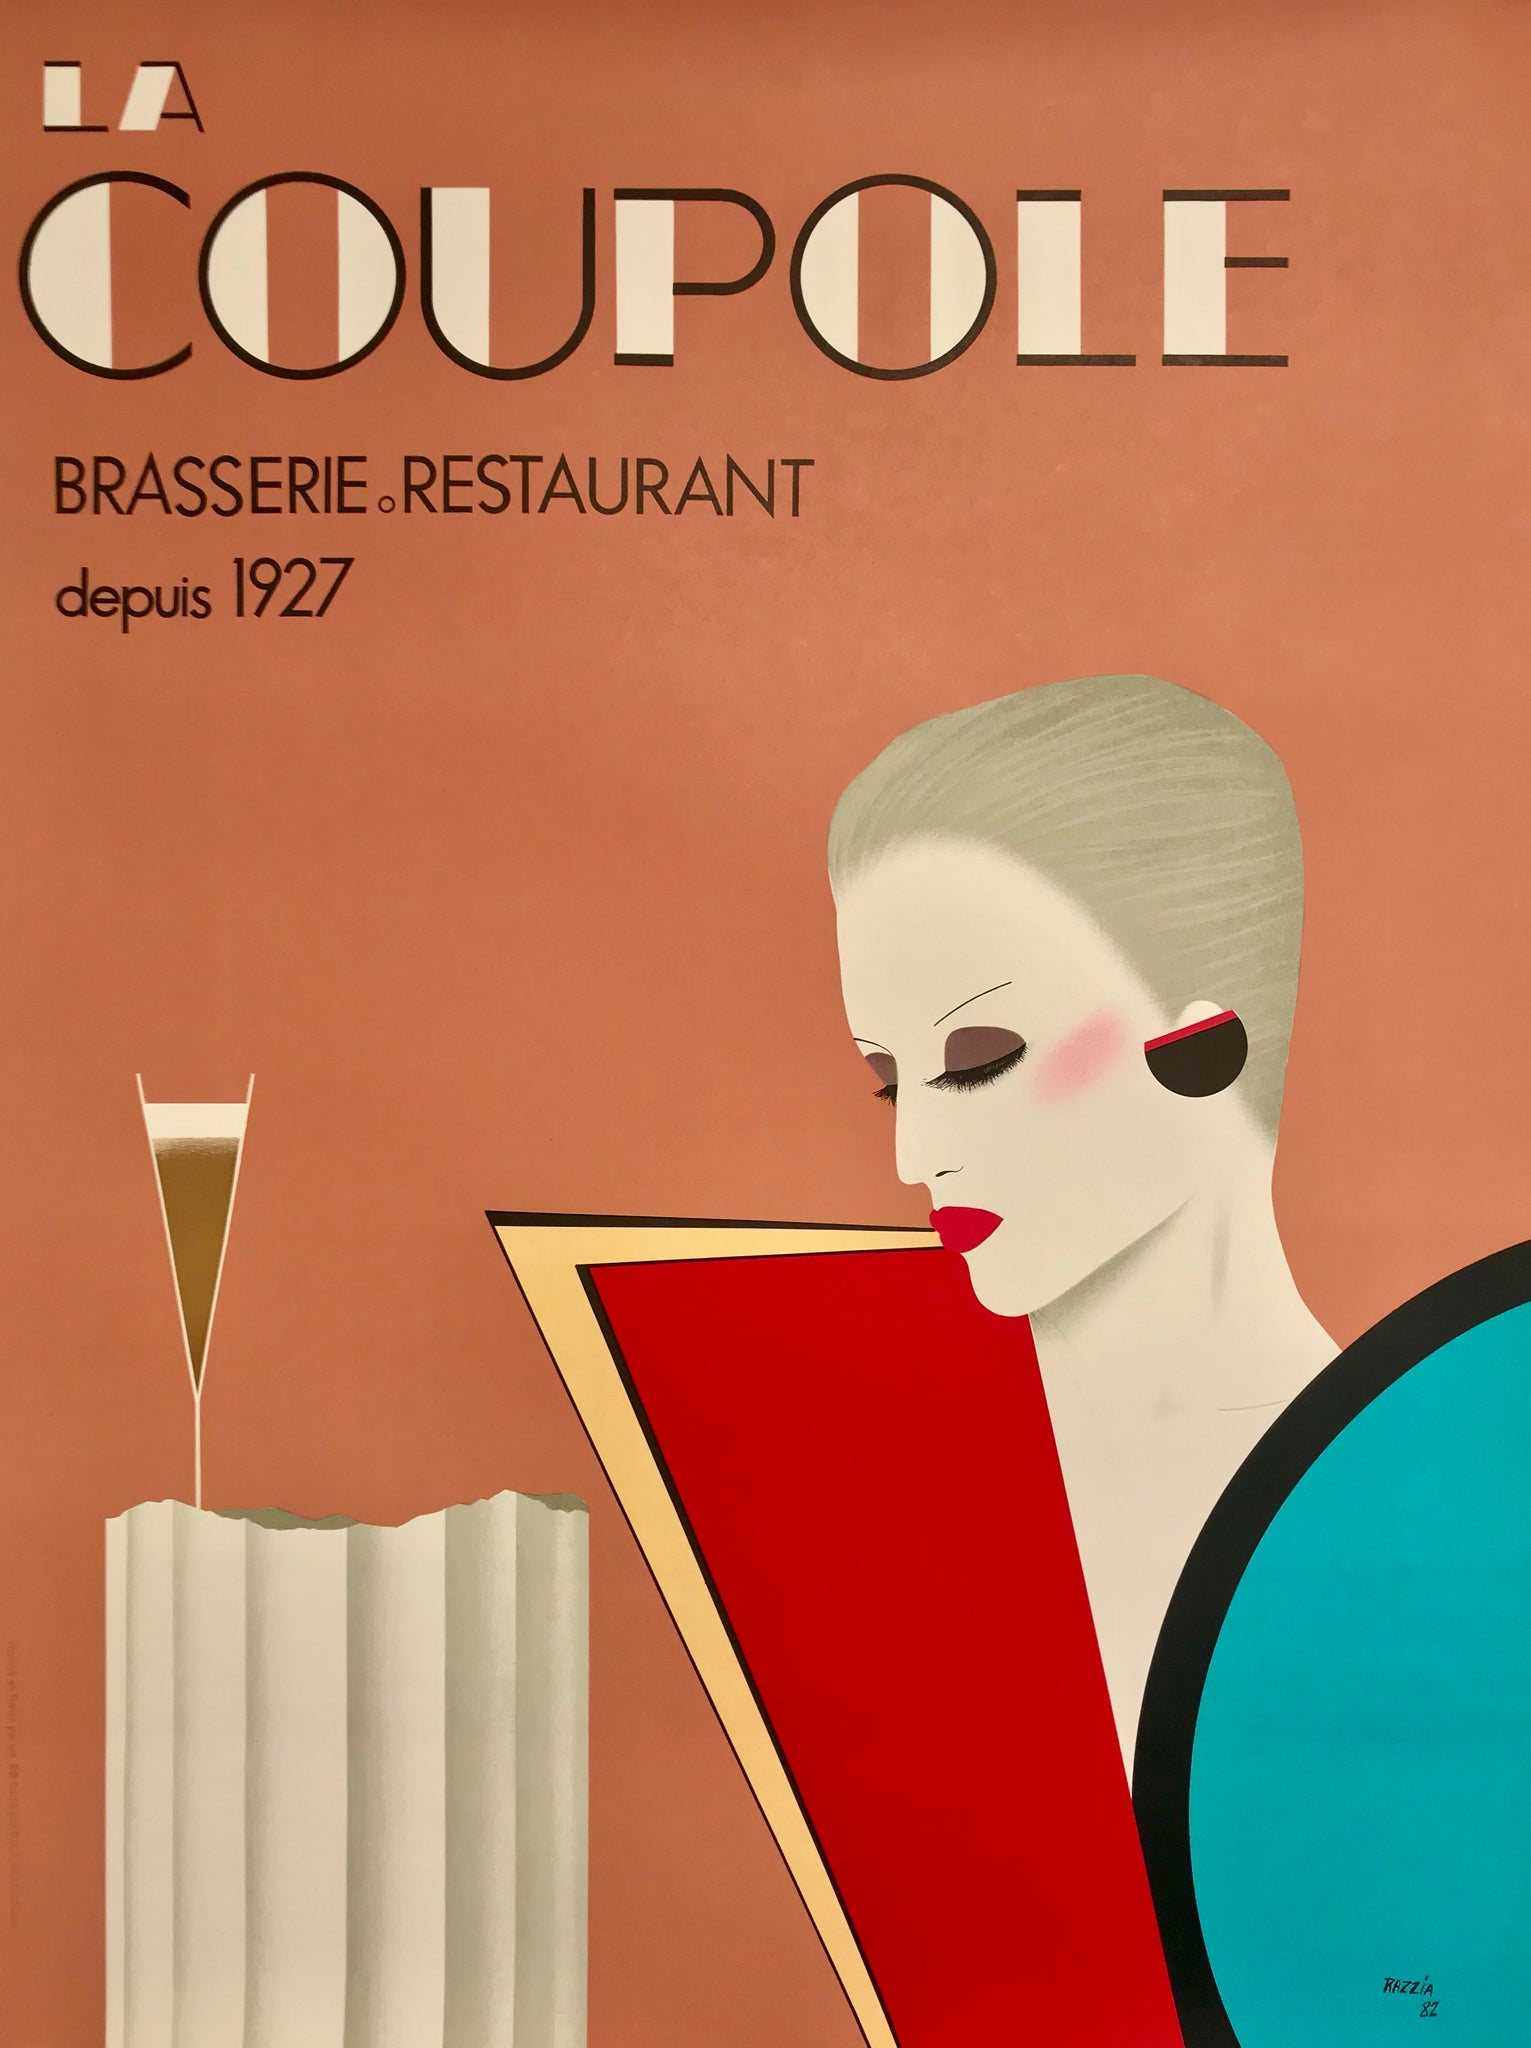 Affiche La coupole, Brasserie Restaurant "depuis 1927" - Razzia 1982